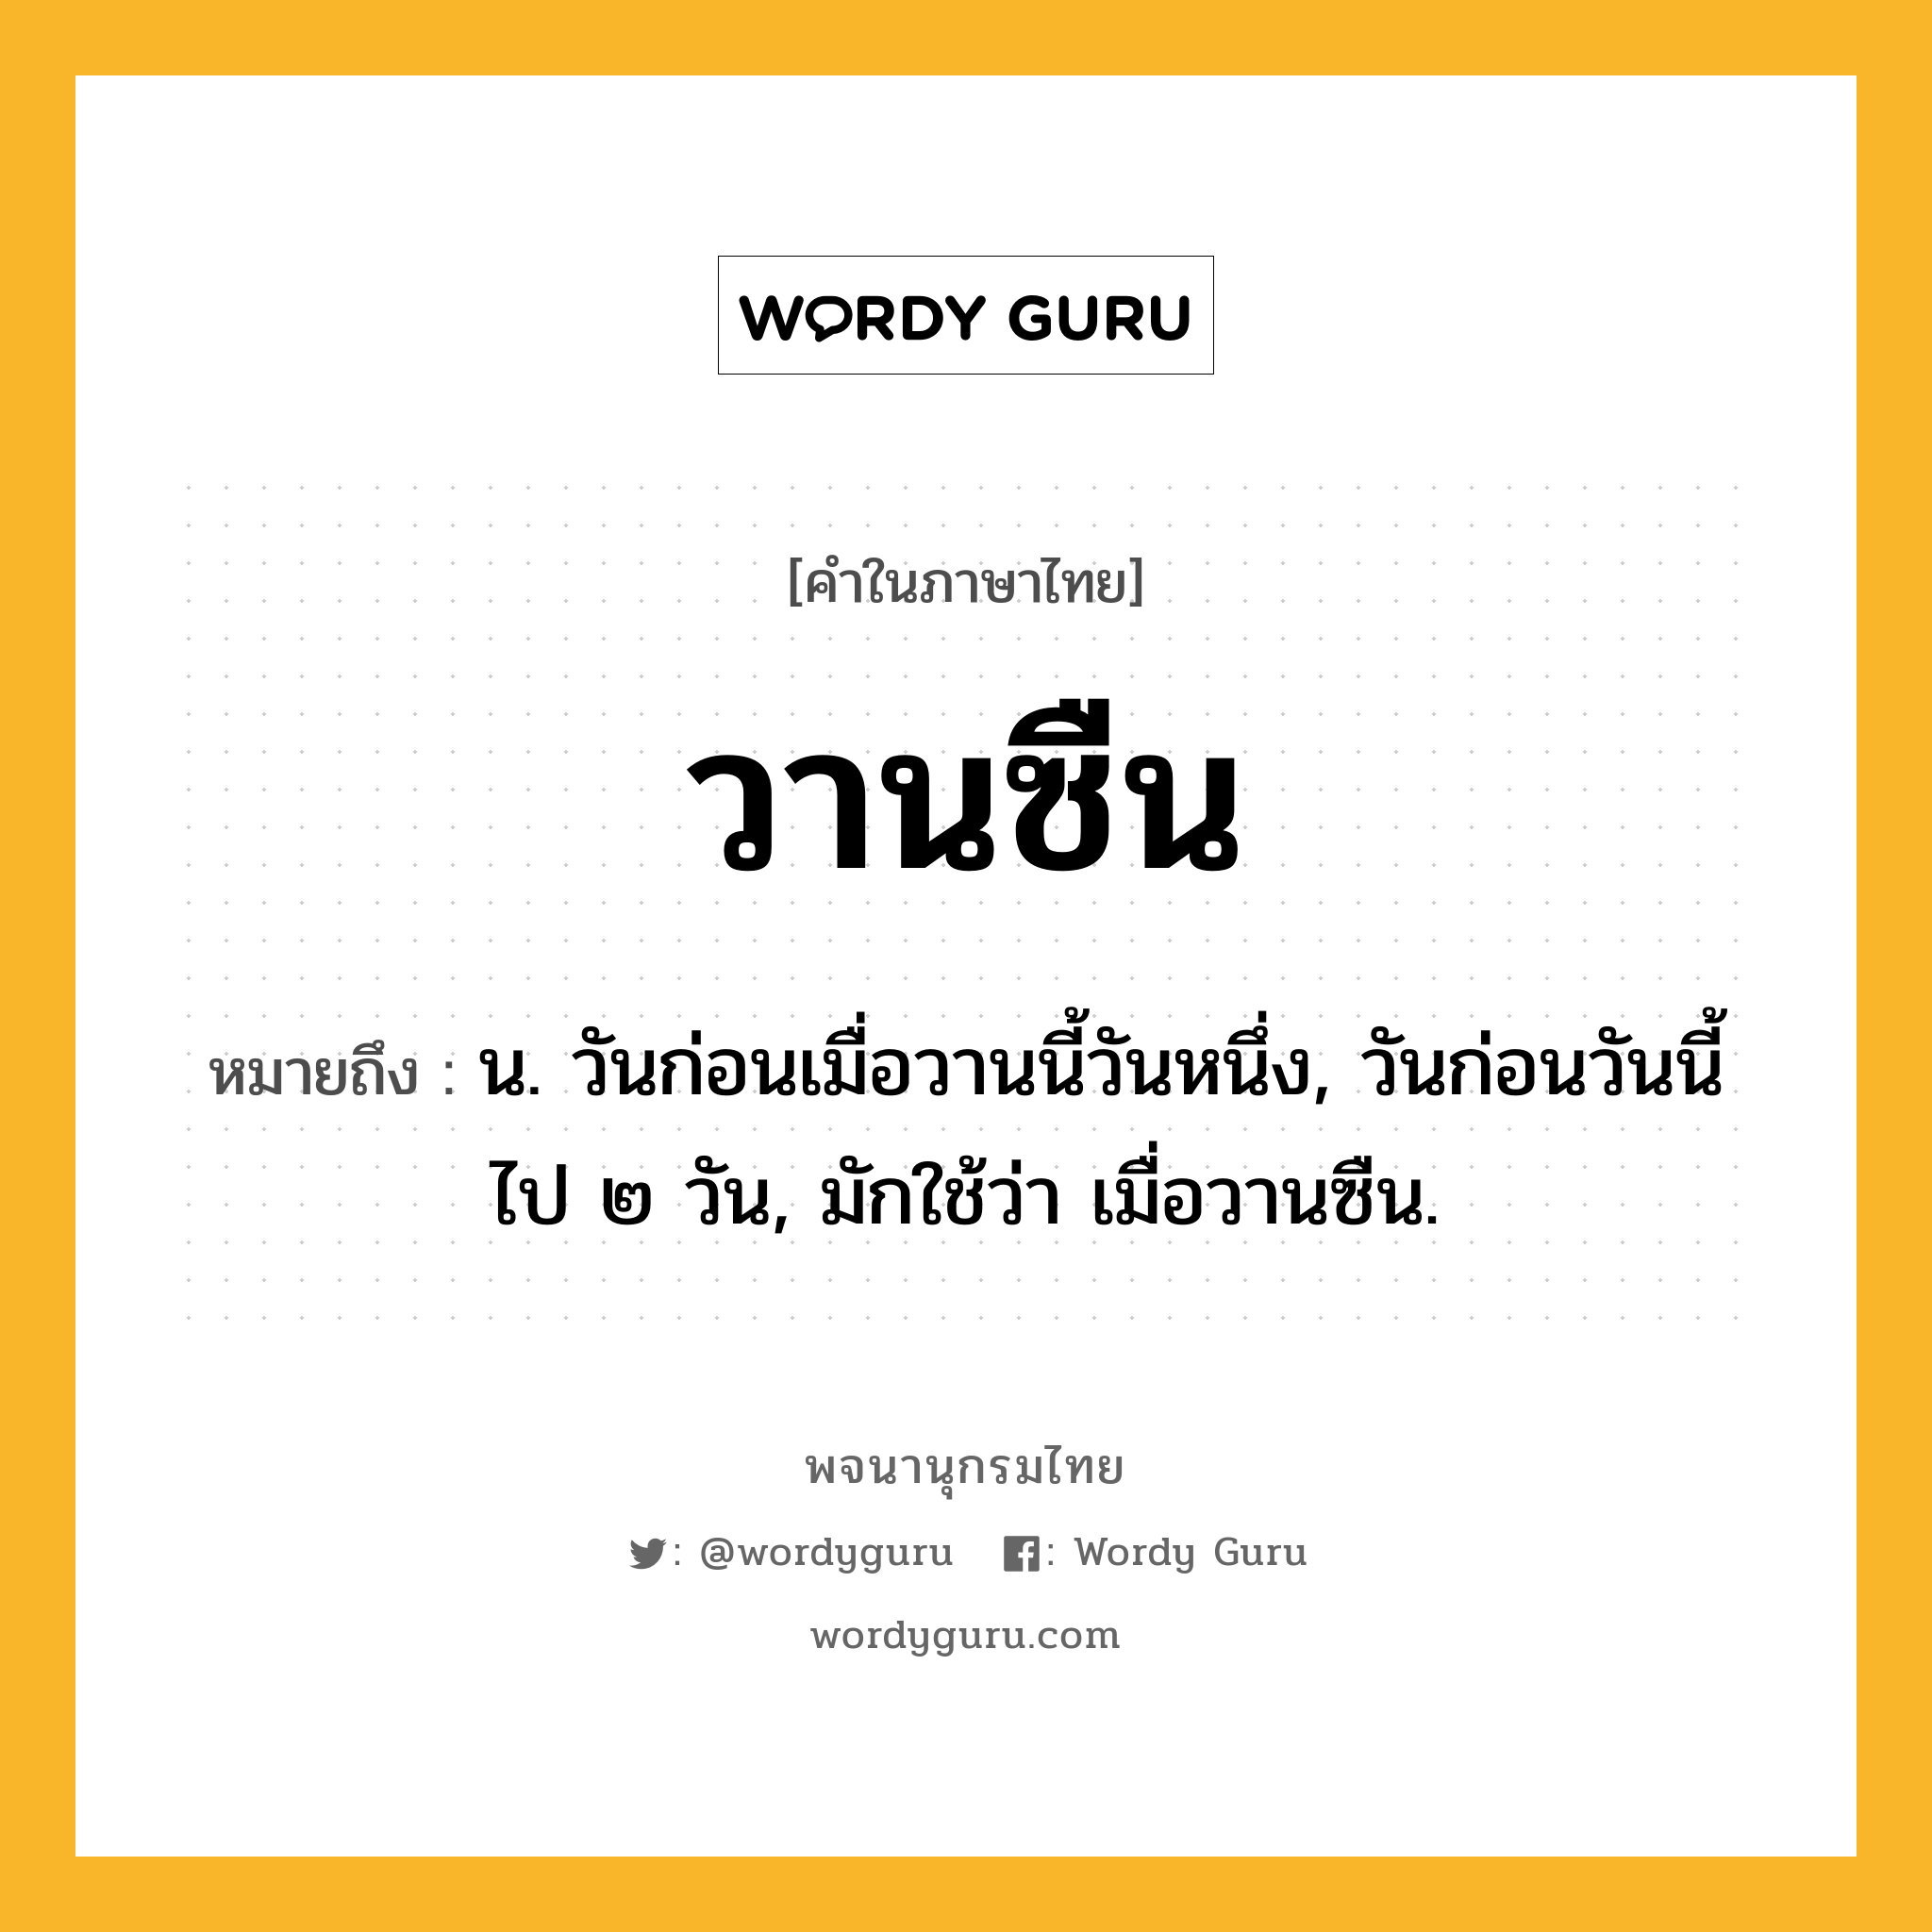 วานซืน ความหมาย หมายถึงอะไร?, คำในภาษาไทย วานซืน หมายถึง น. วันก่อนเมื่อวานนี้วันหนึ่ง, วันก่อนวันนี้ไป ๒ วัน, มักใช้ว่า เมื่อวานซืน.